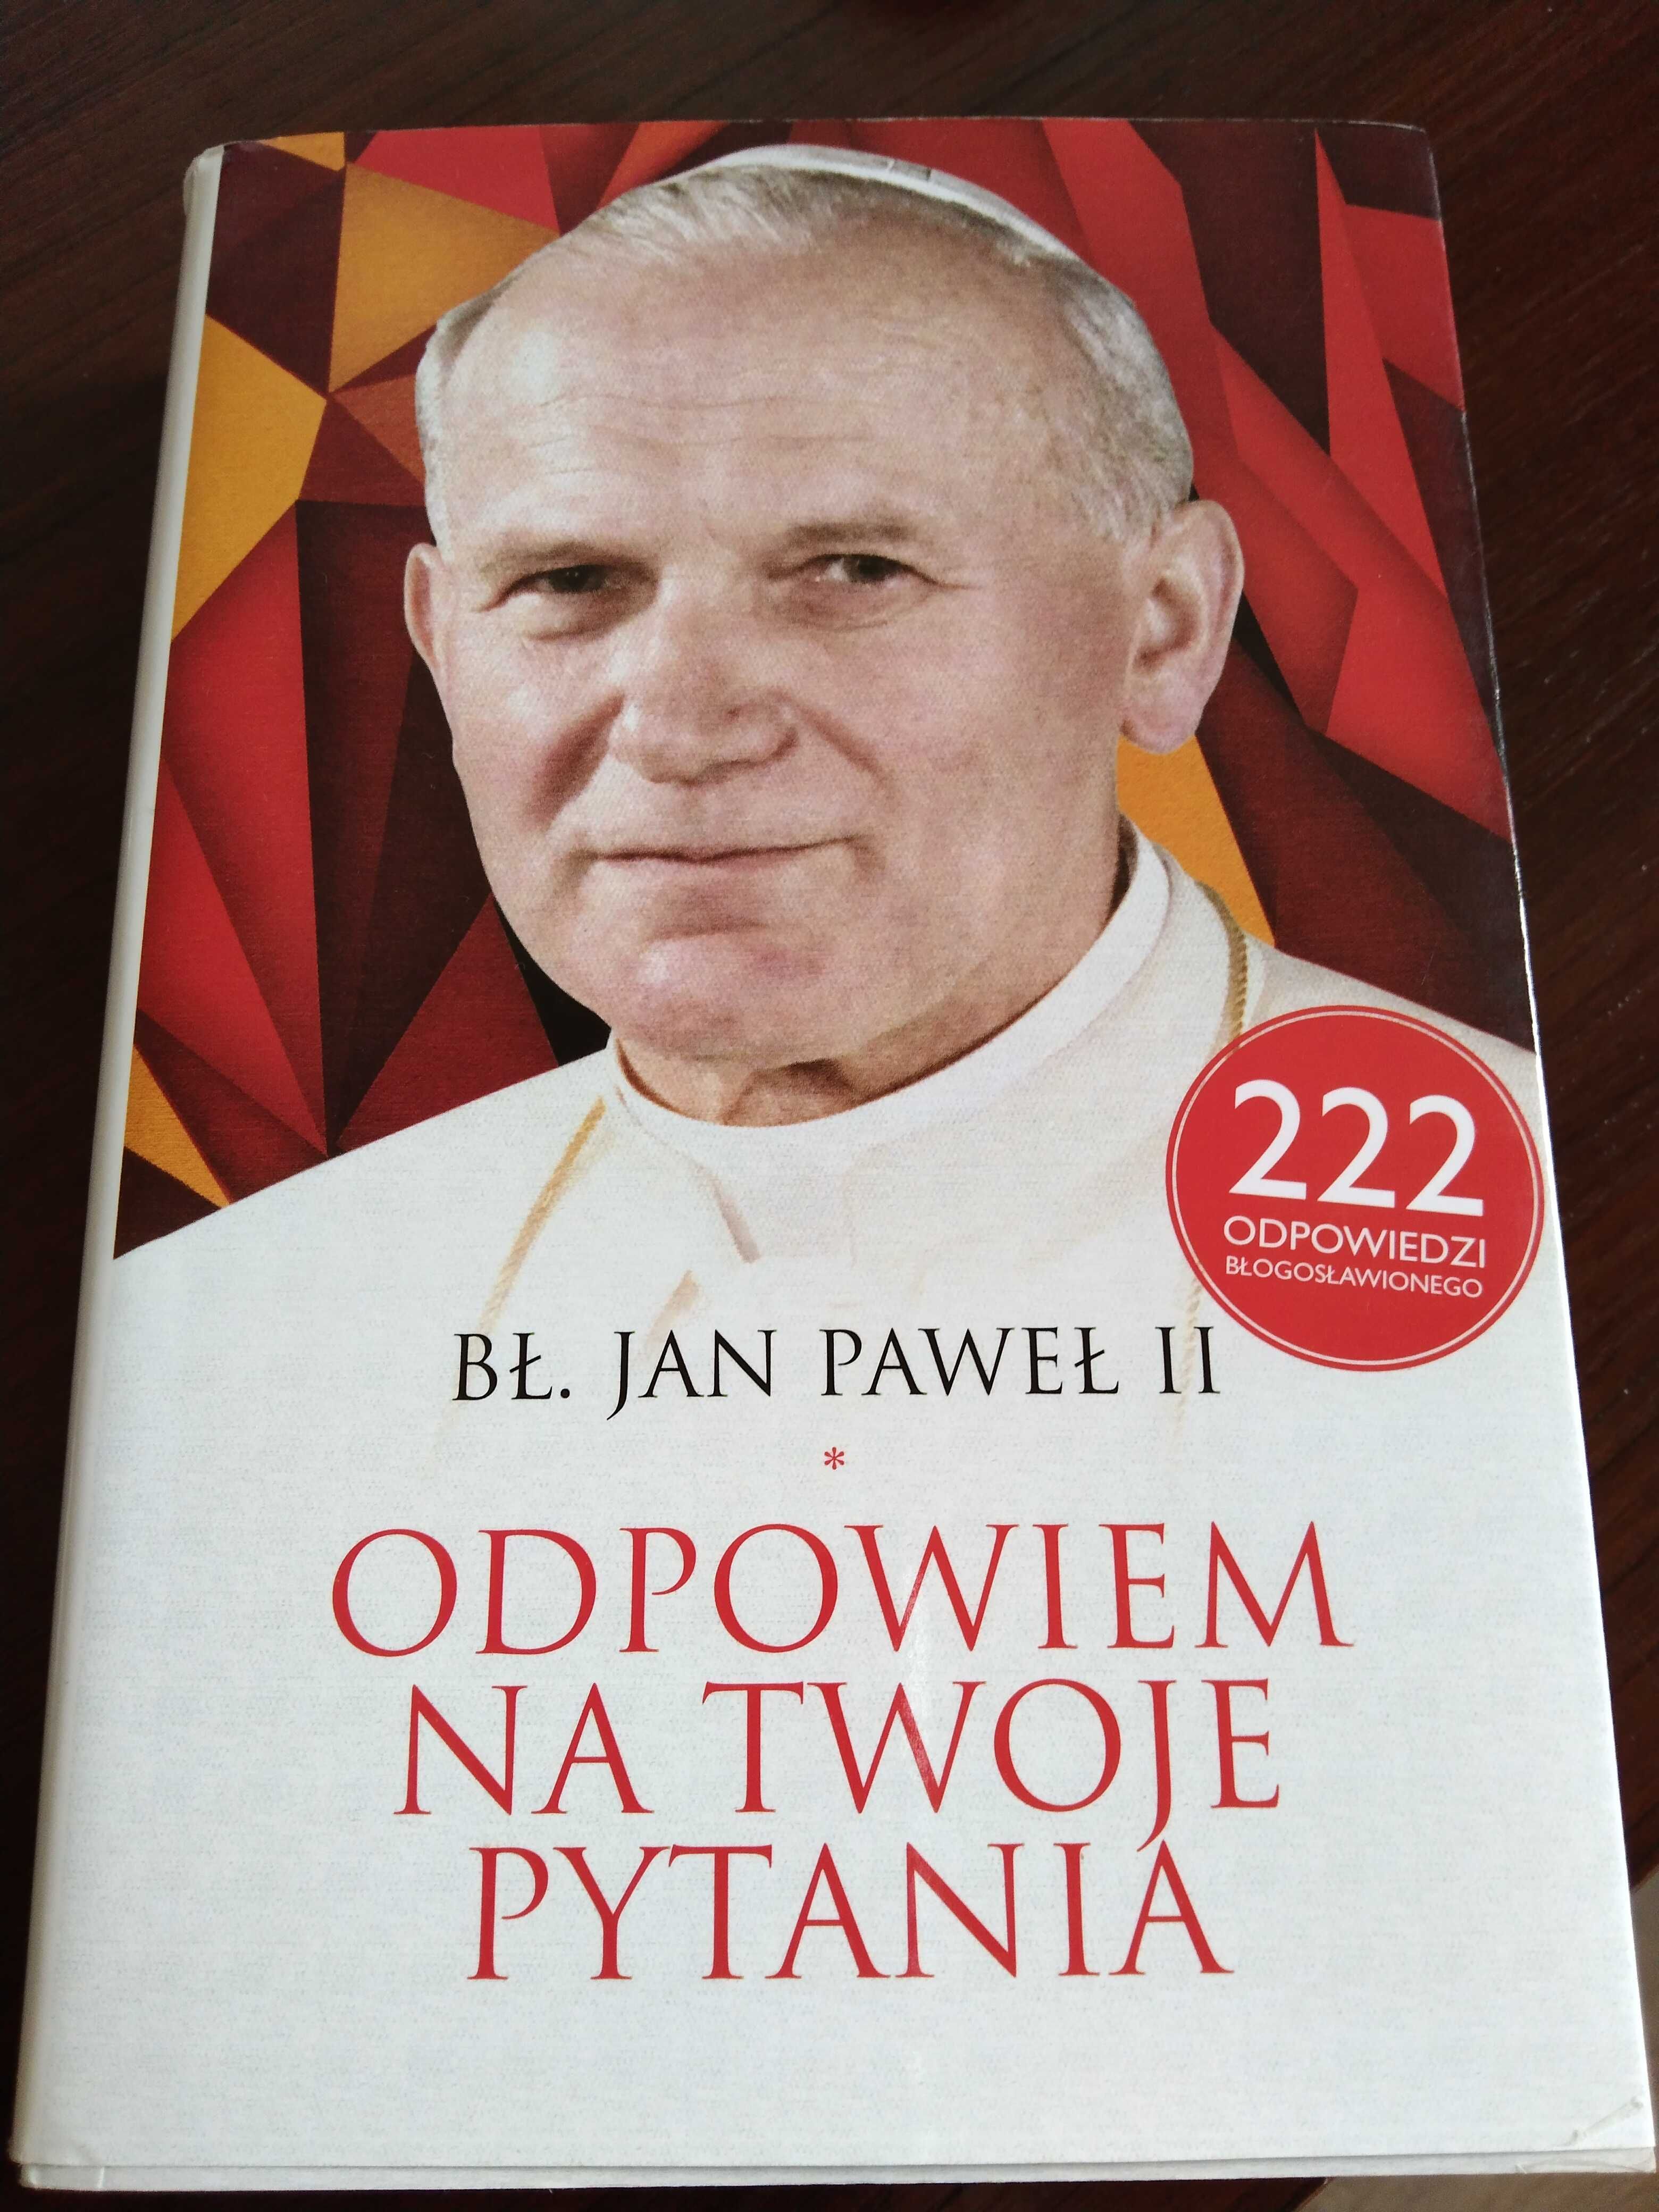 Jan Paweł II "Odpowiem na twoje pytania" książka